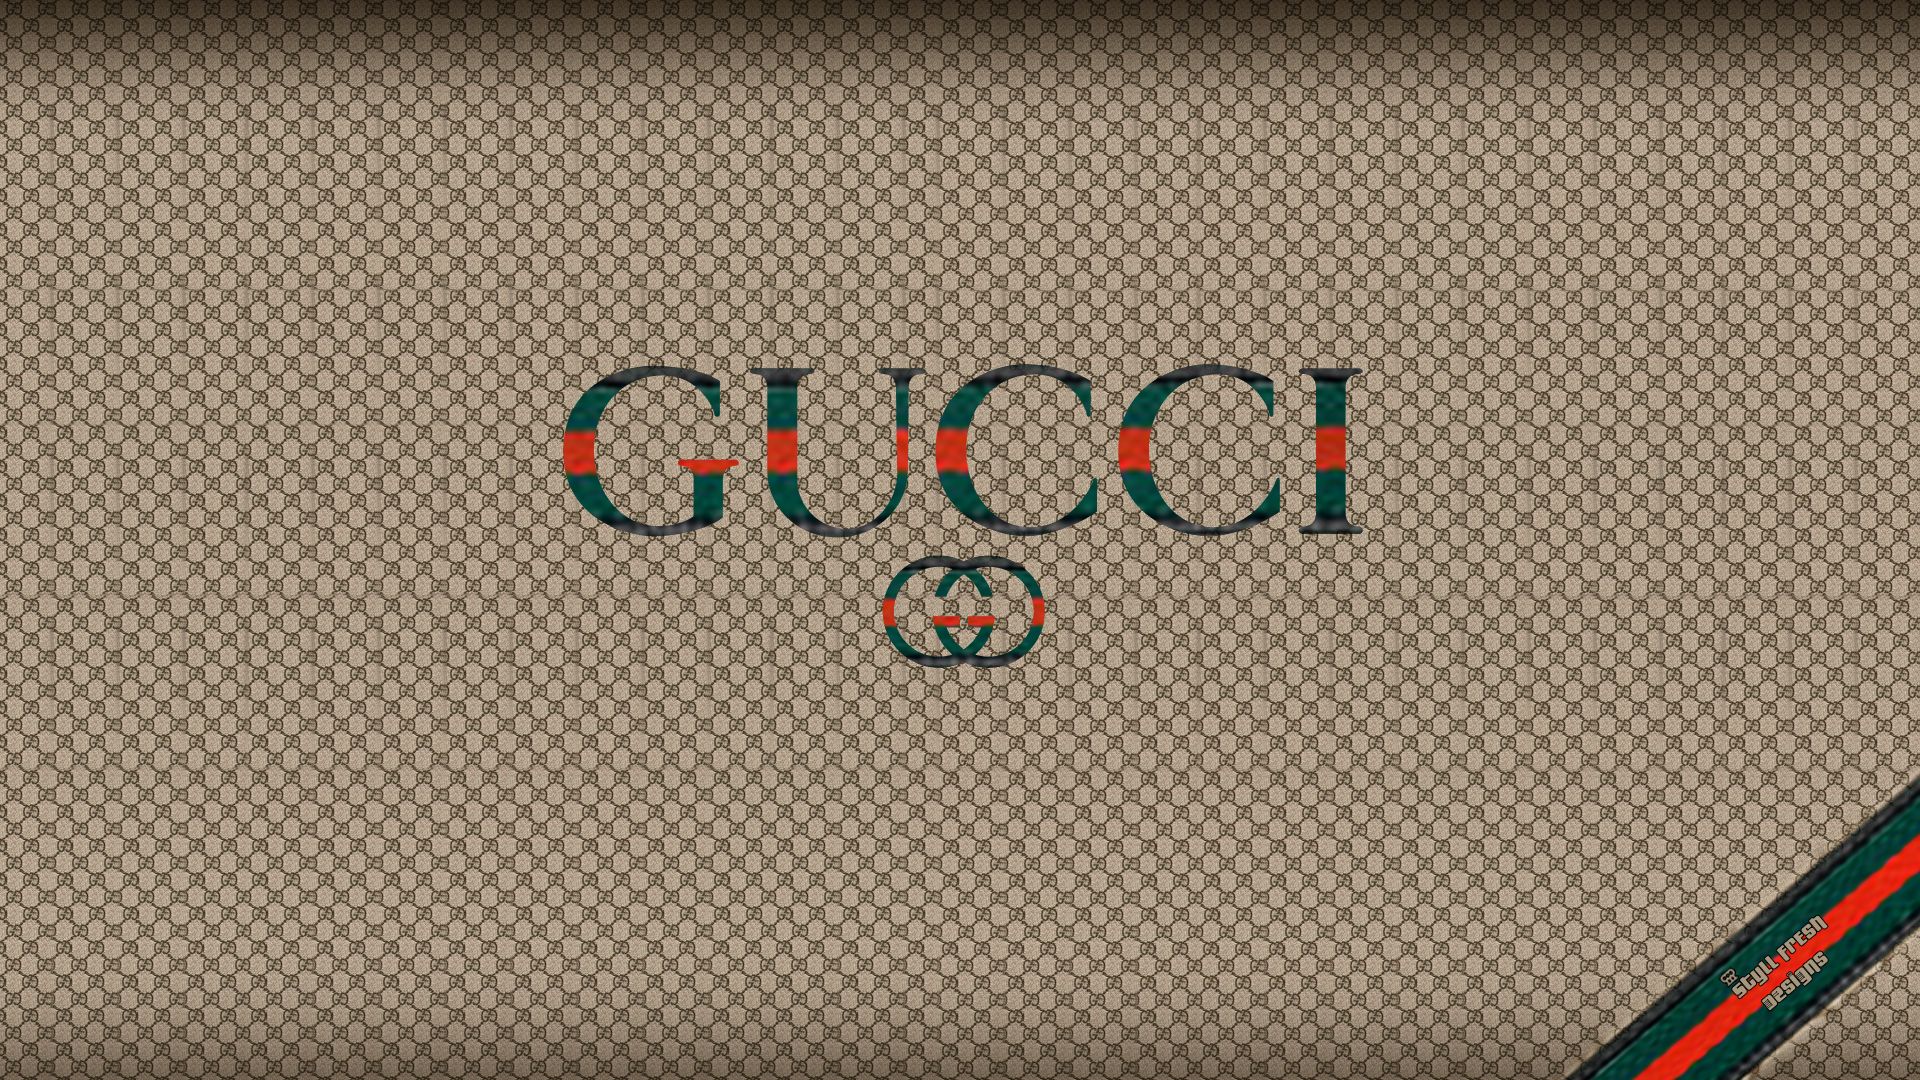 Gucci HD Wallpaper On